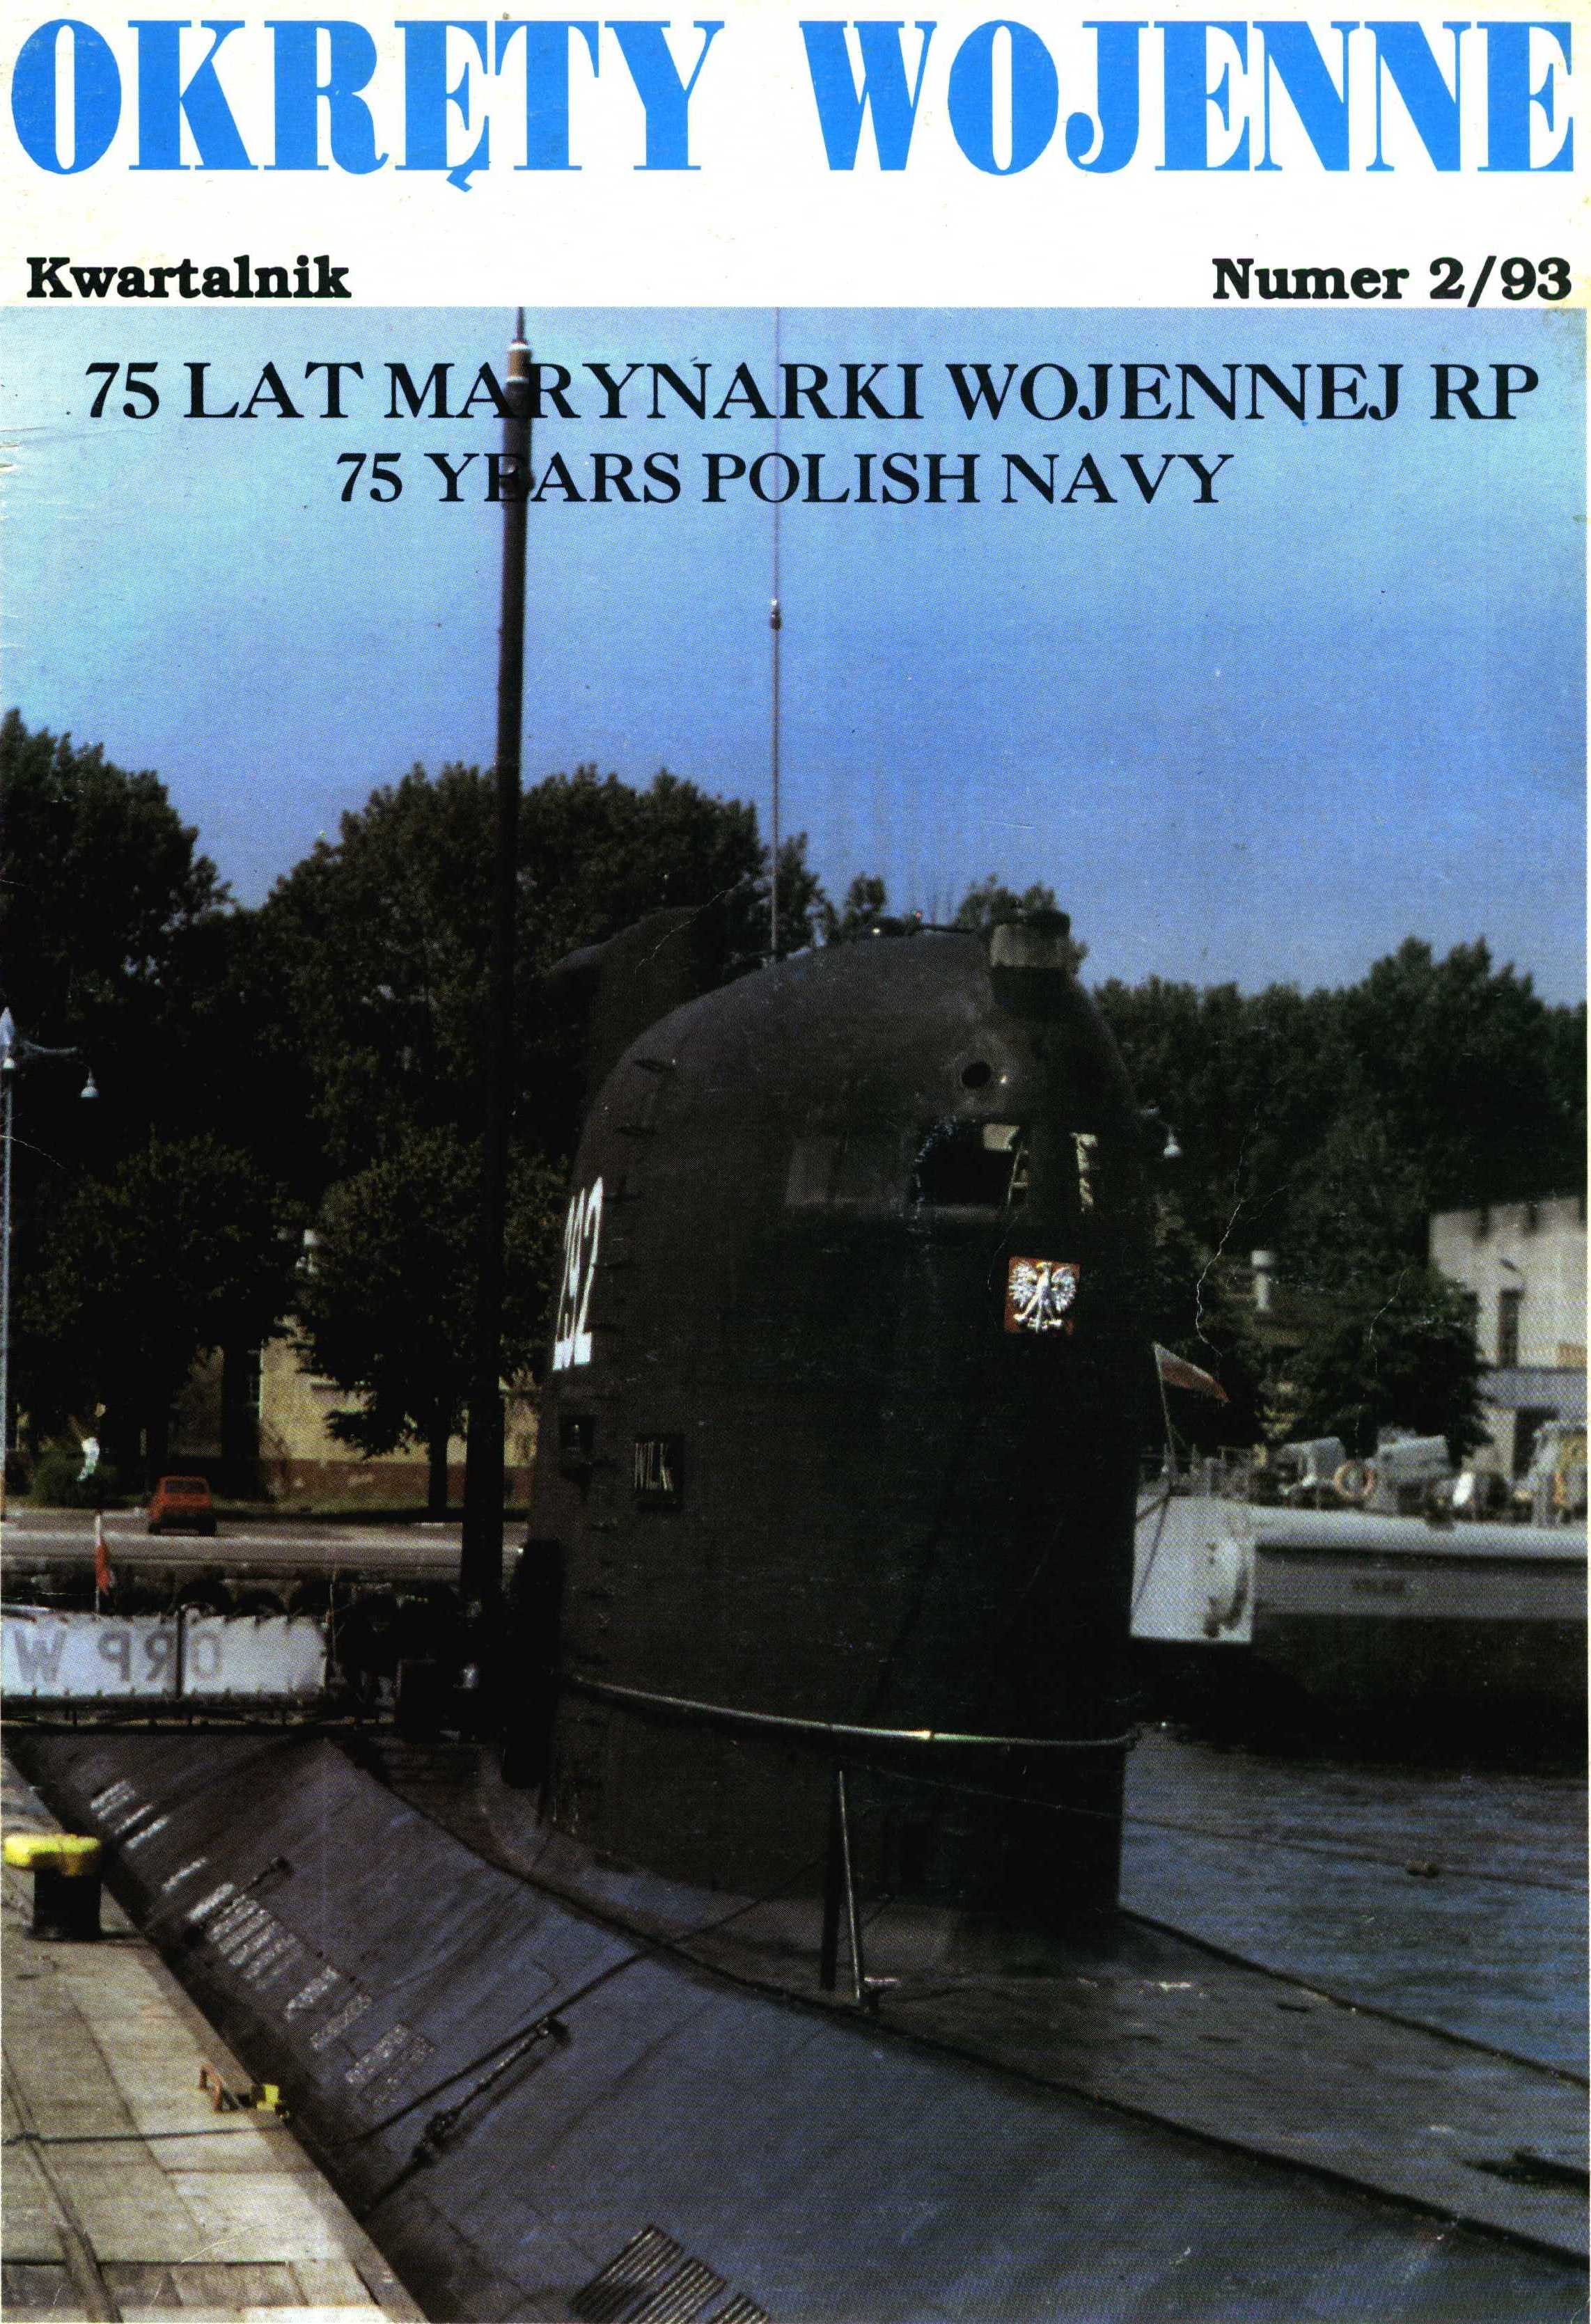 Okręty Wojenne - OW-008 1993-2 okładka.jpg